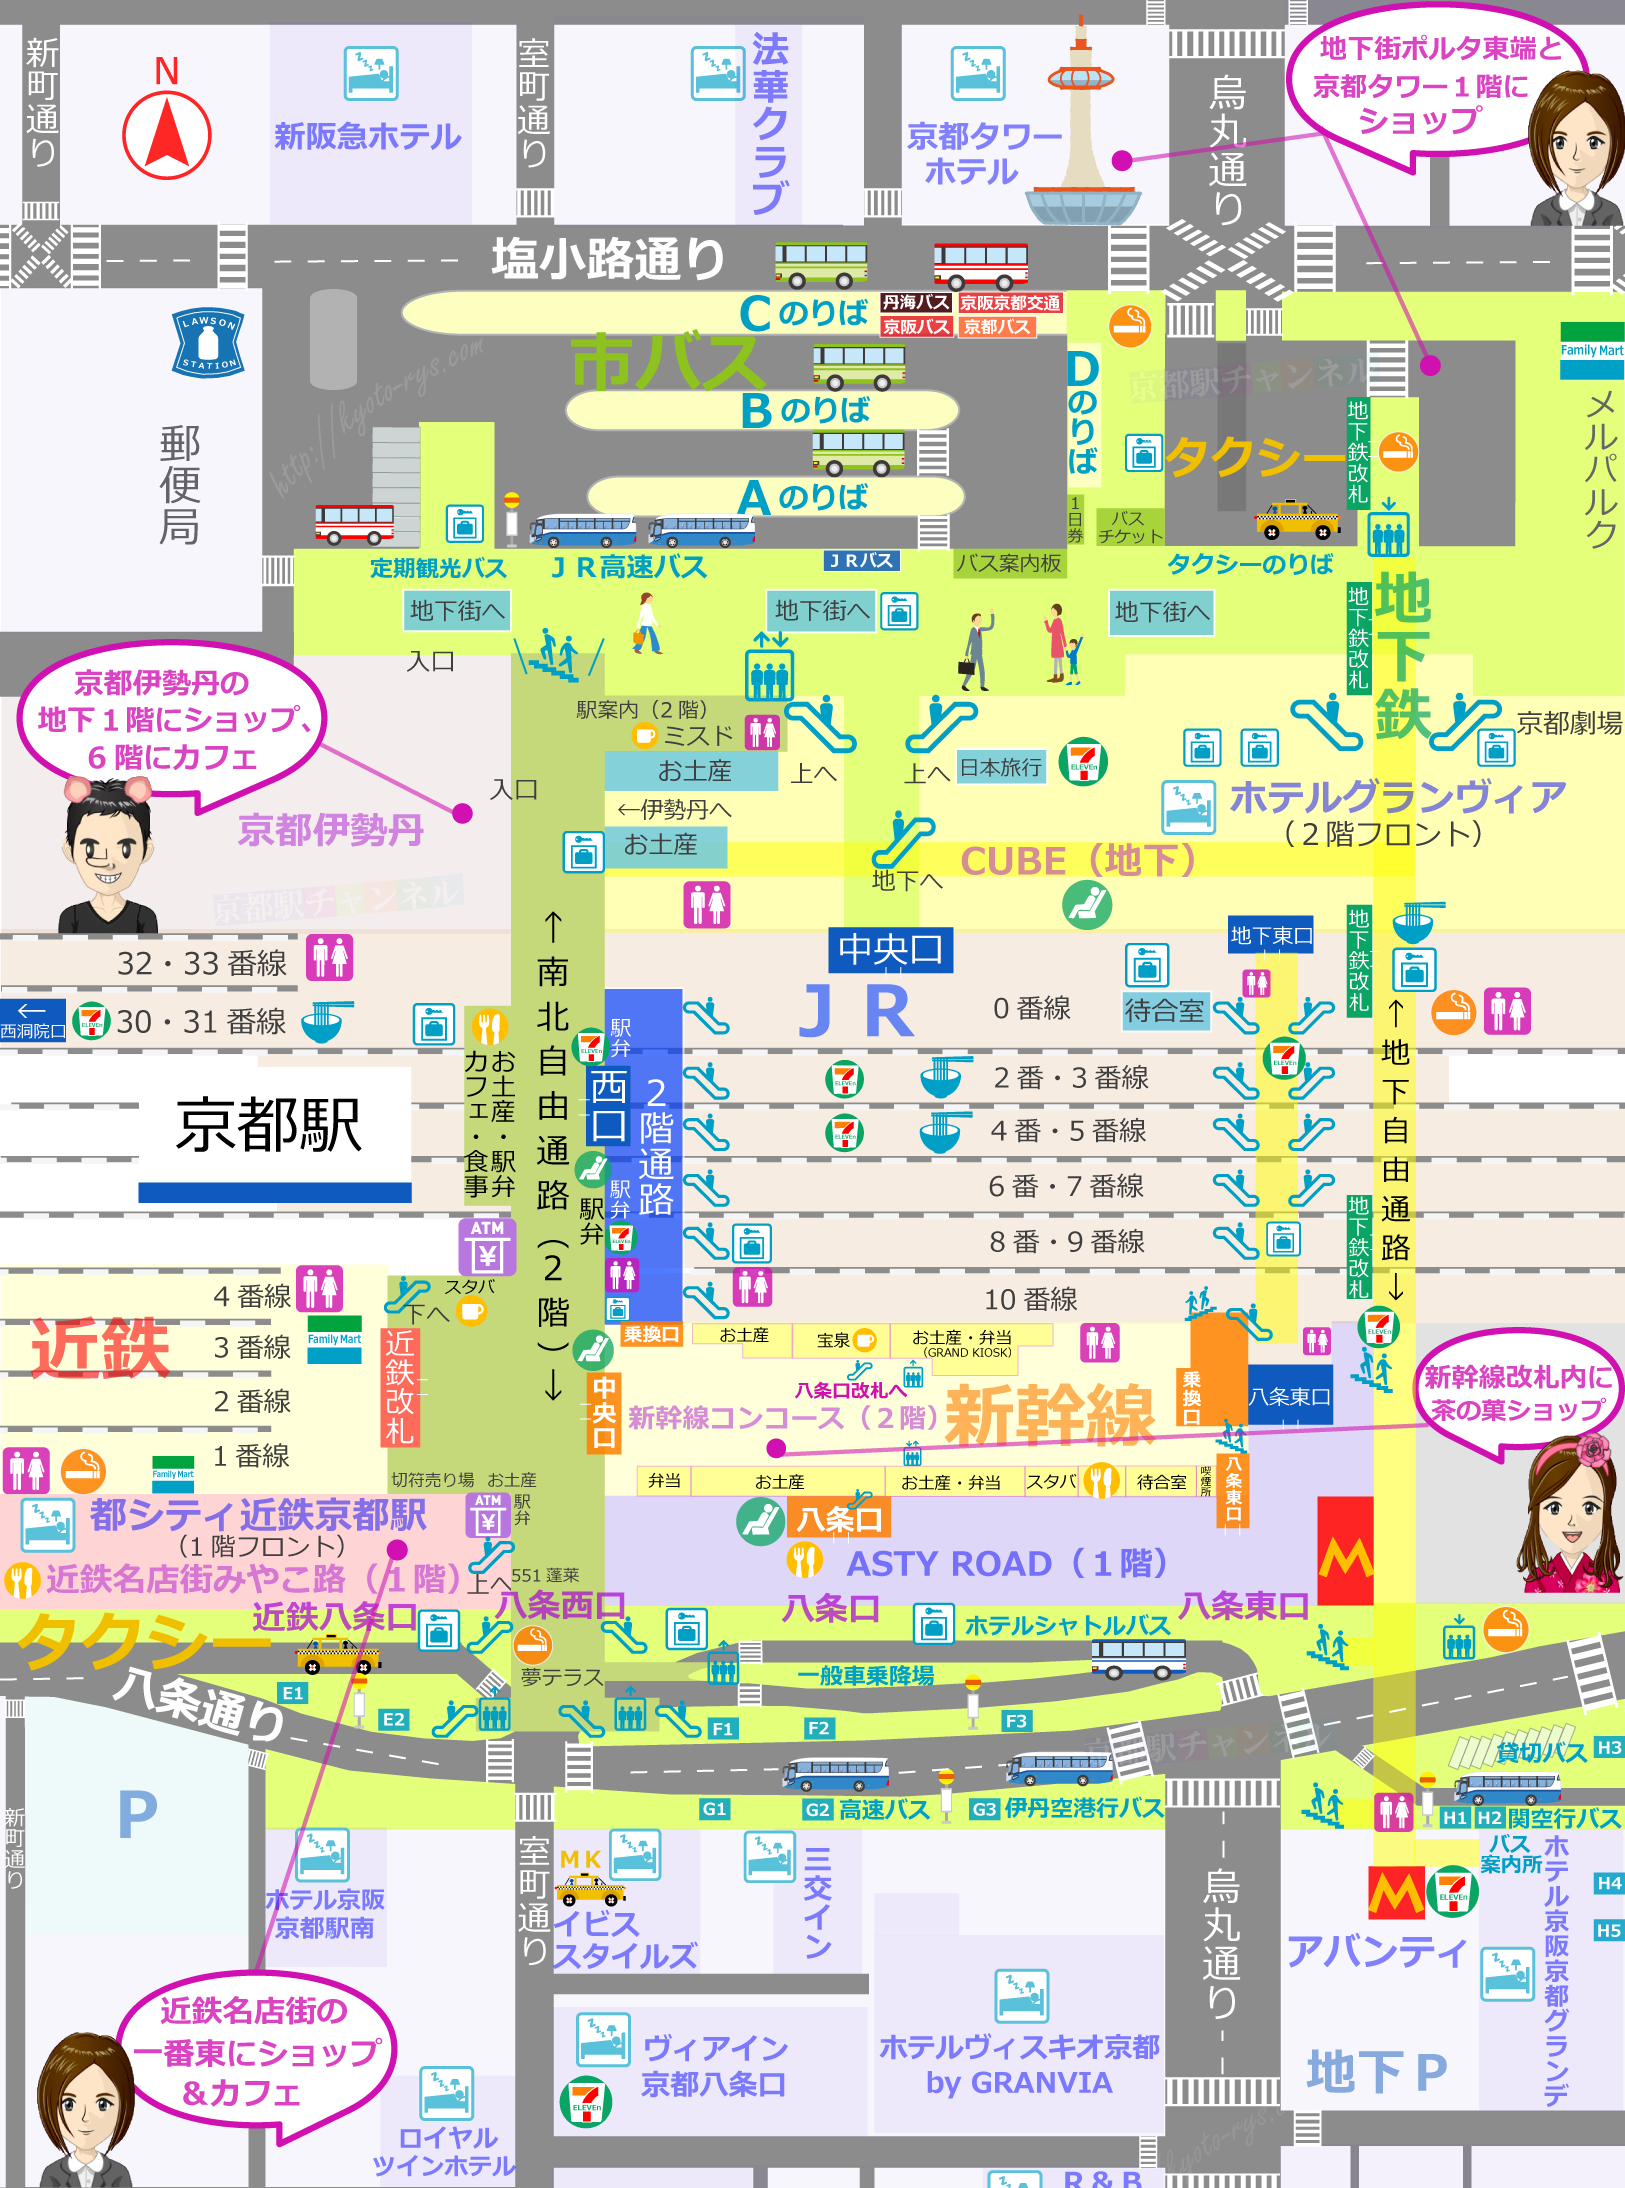 京都駅の構内図とマールブランシュ北山のお店マップ